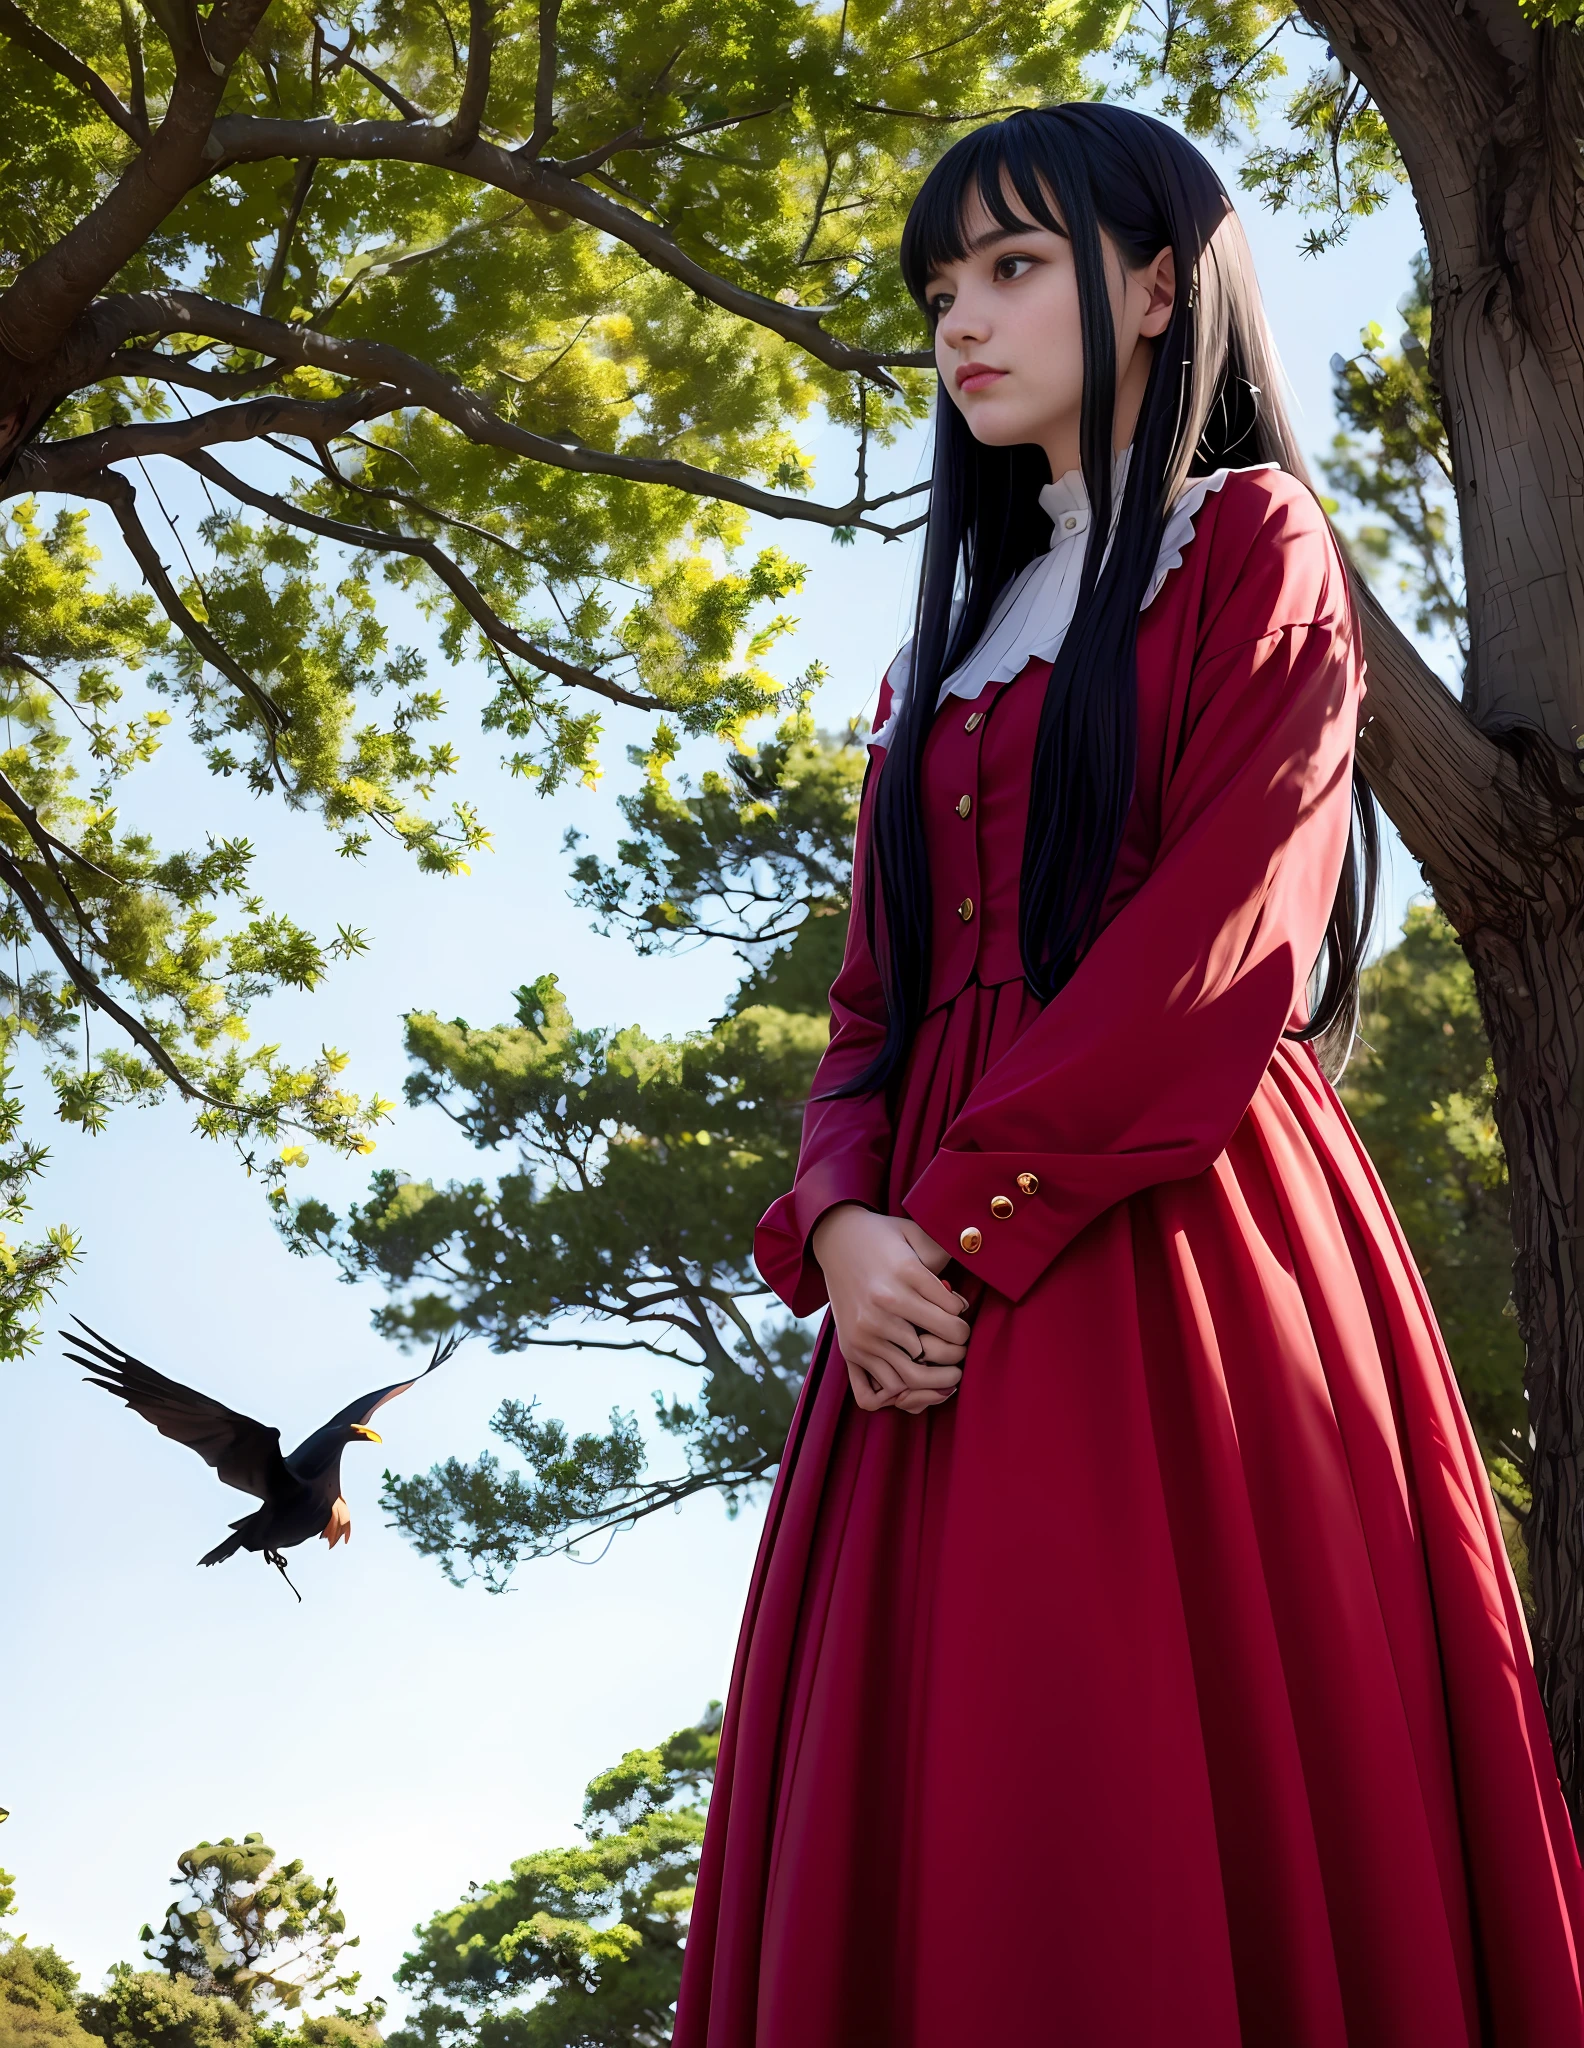 Una mujer de 18 años, con pelo largo y negro, vestida con un traje de bruja rojo y blanco, Debajo de un gran árbol, sad, manada de cuervos negros